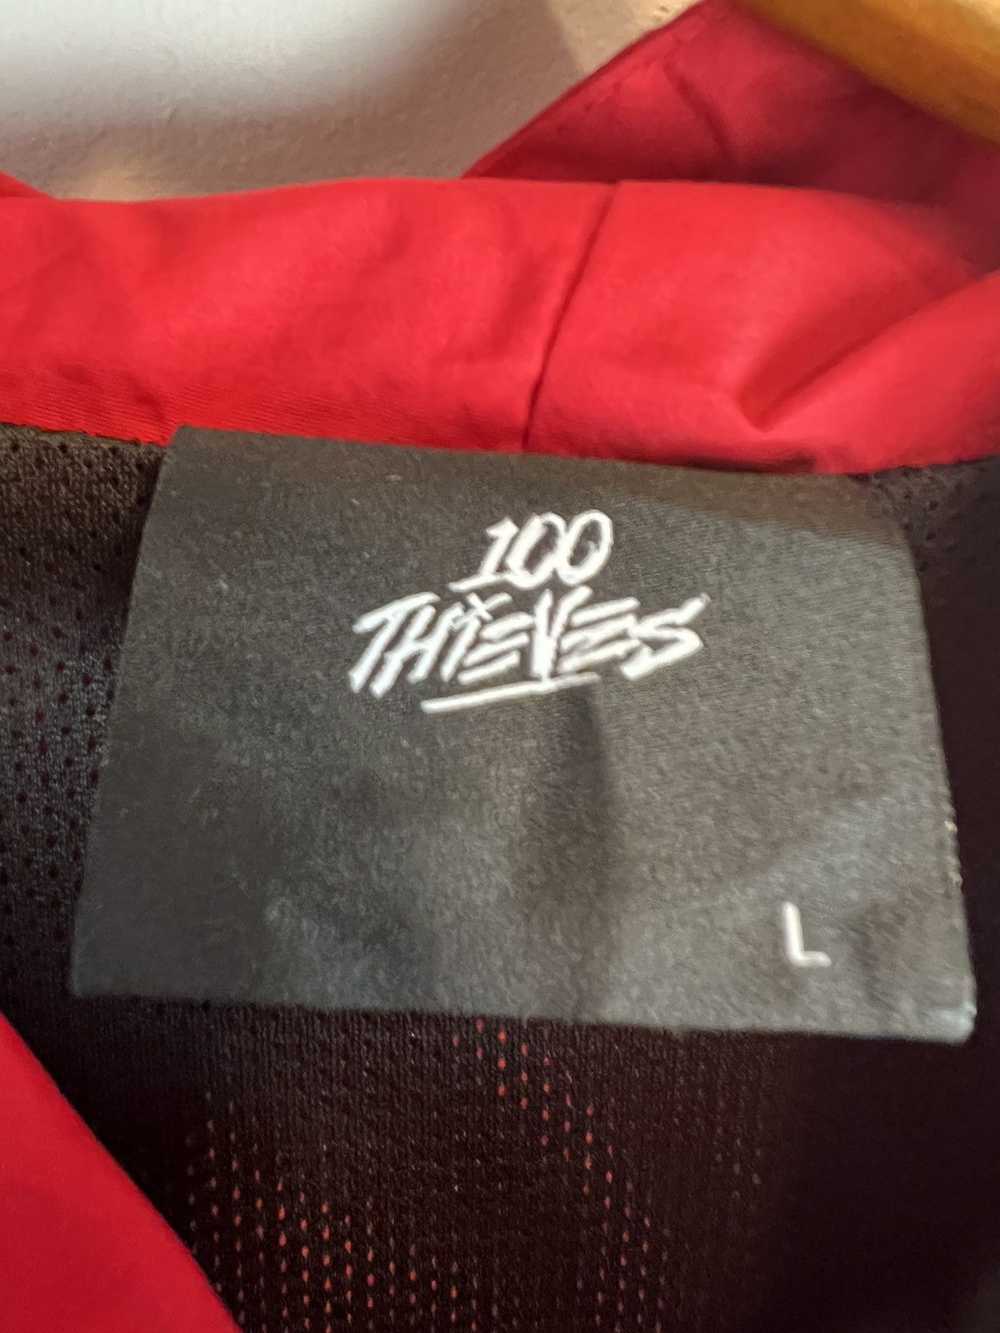 100 Thieves 100 thieves windbreaker jacket - image 3